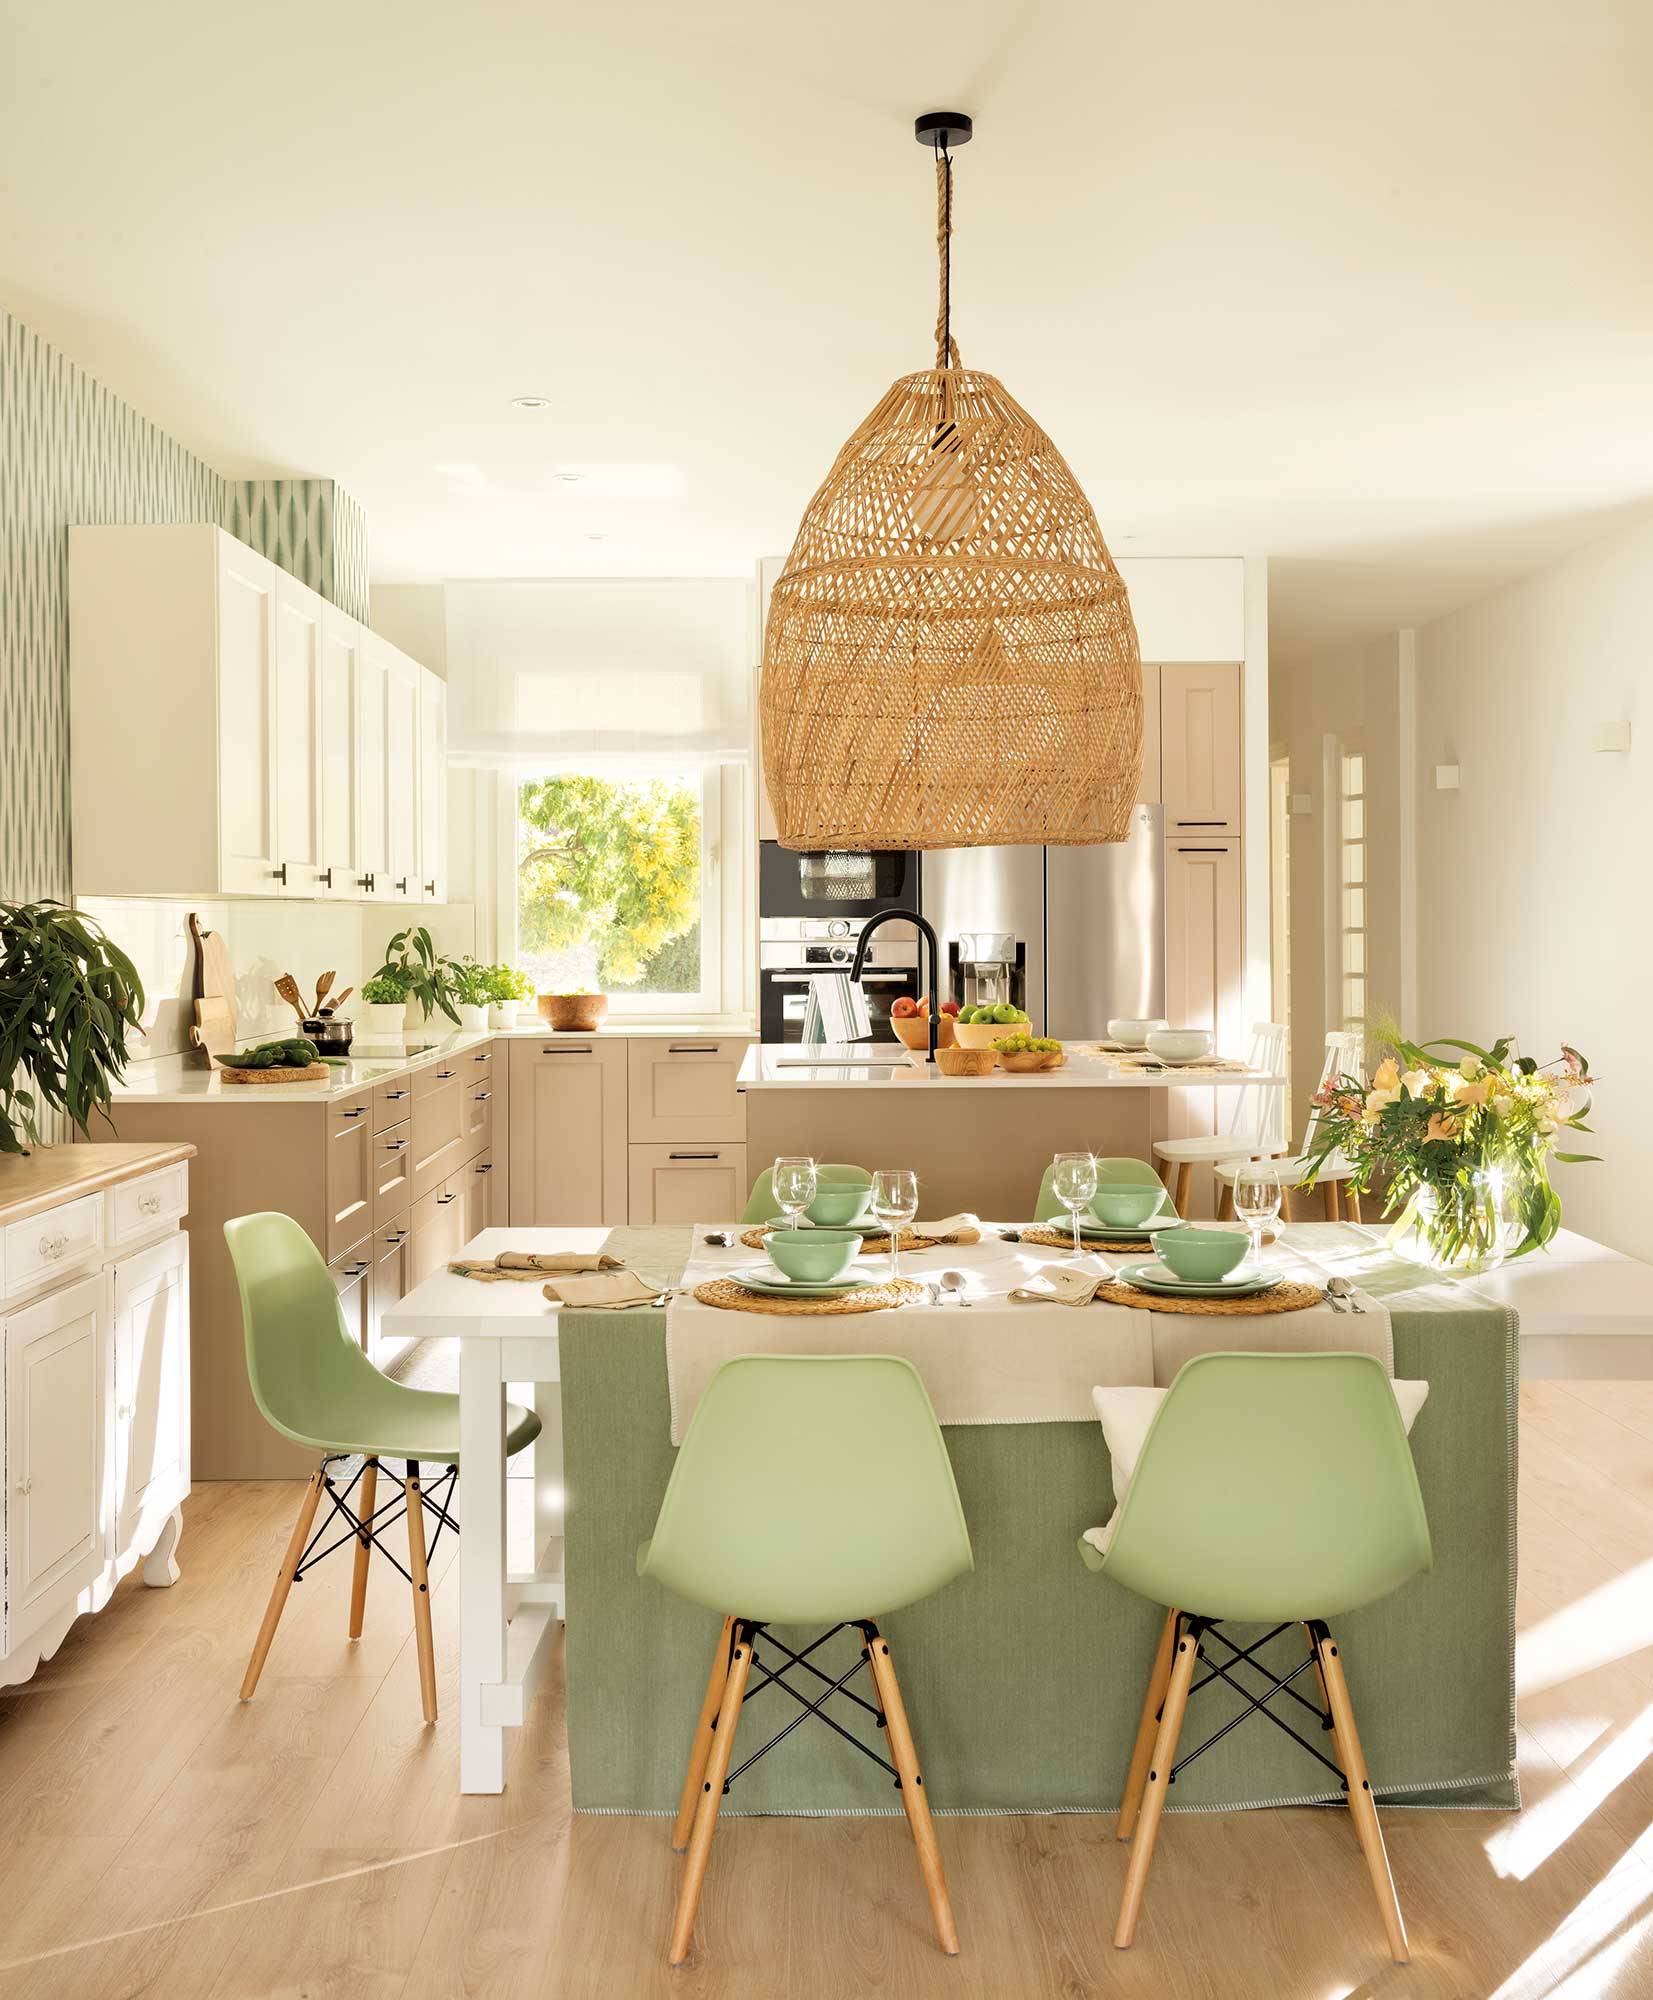 Comedor abierto a la cocina con sillas verdes.